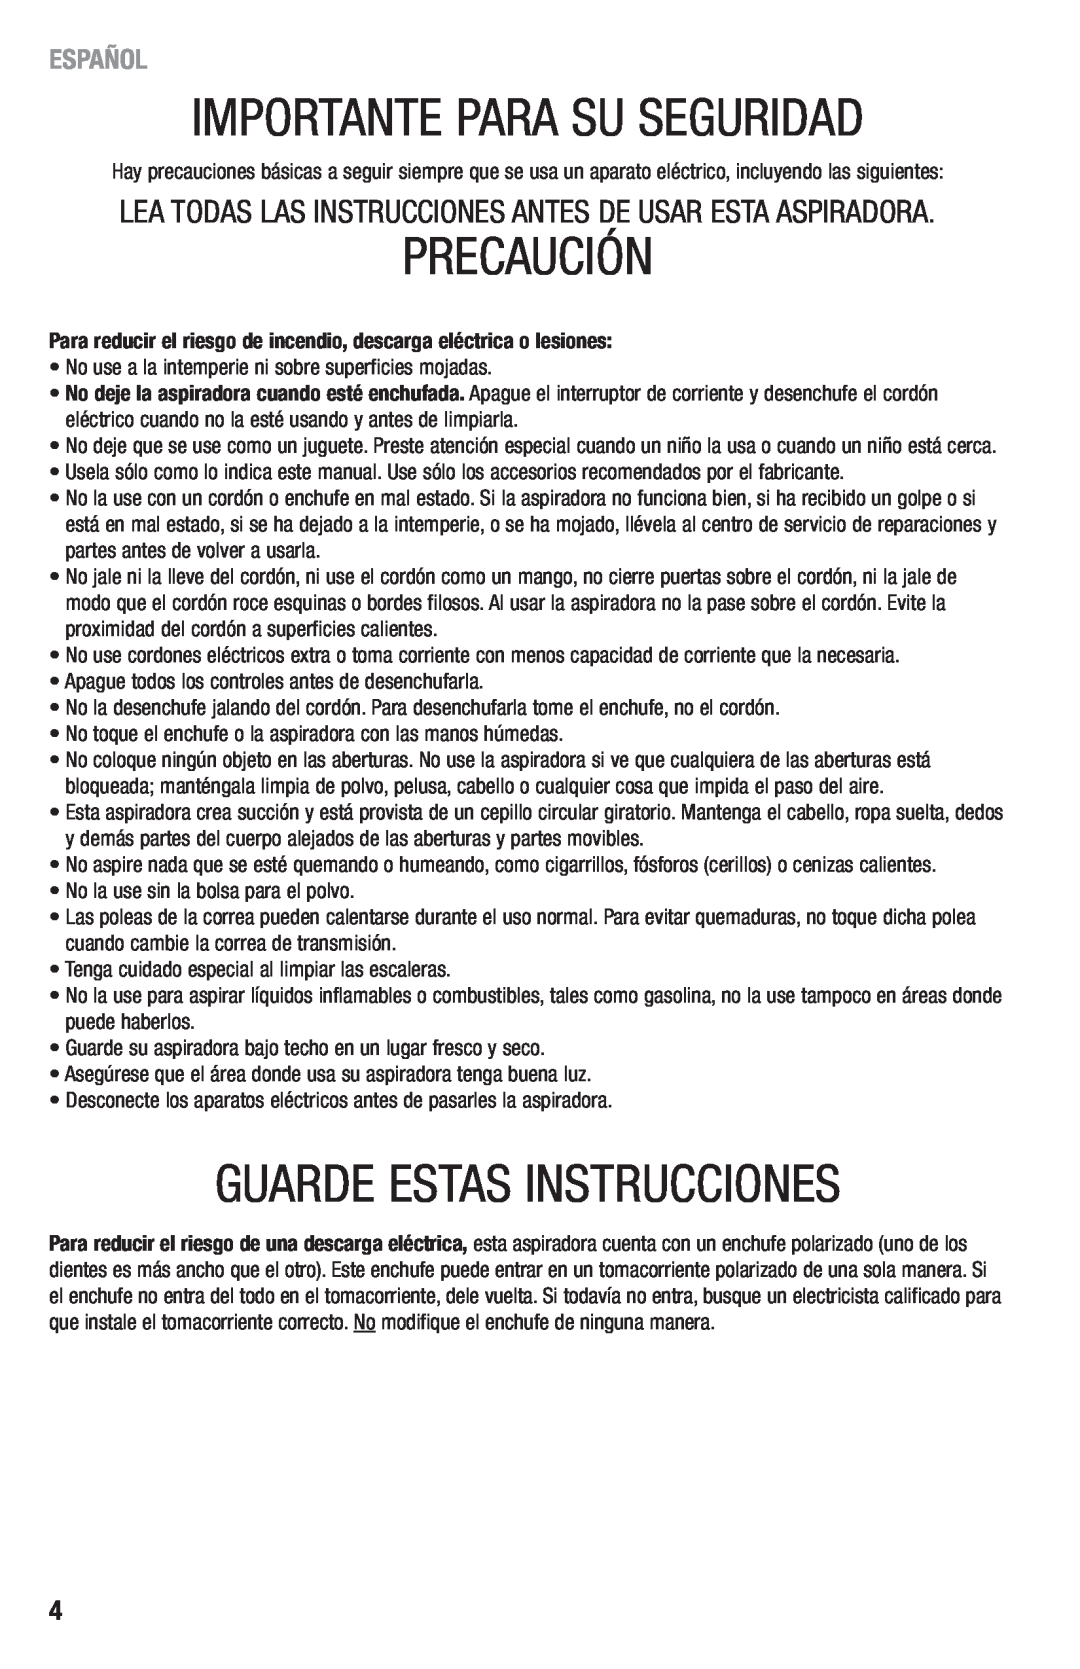 Eureka 410 manual Importante Para Su Seguridad, Precaución, Guarde Estas Instrucciones, Español 